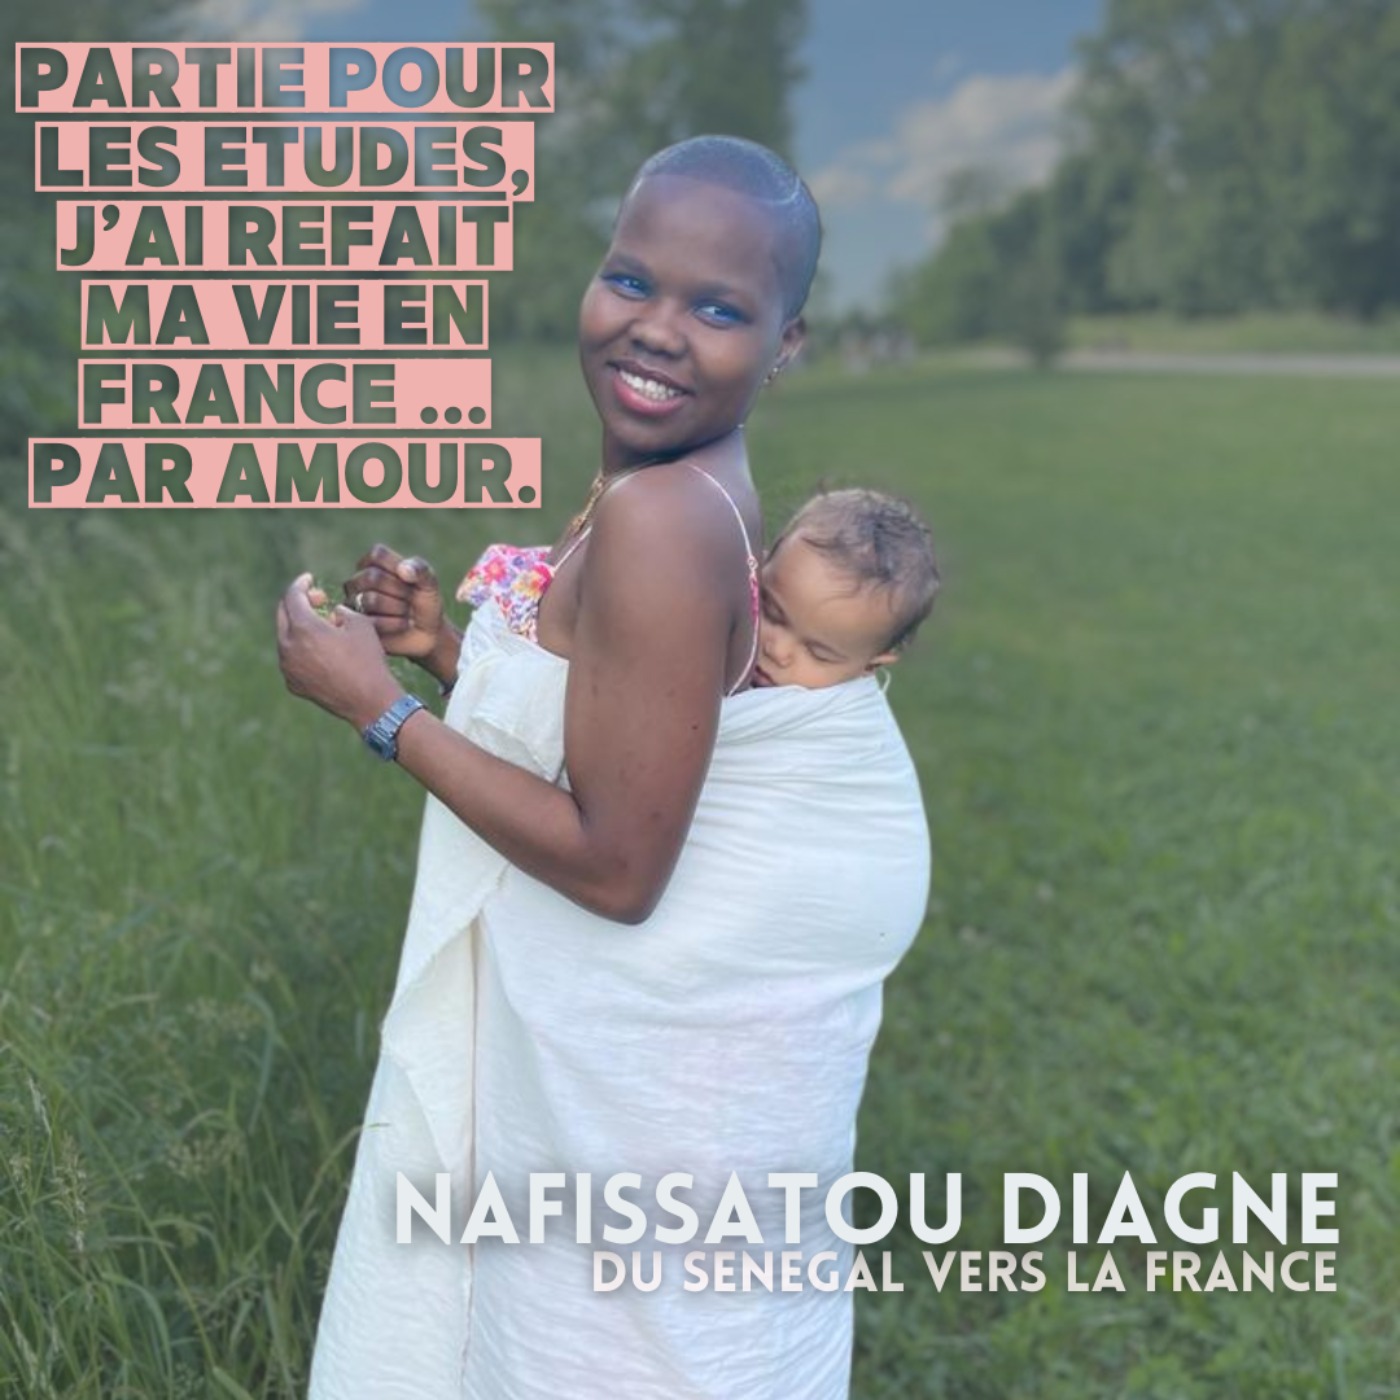 cover art for Nafissatou Diagne : "Partie pour les études, j'ai refait ma vie en France ... par amour."